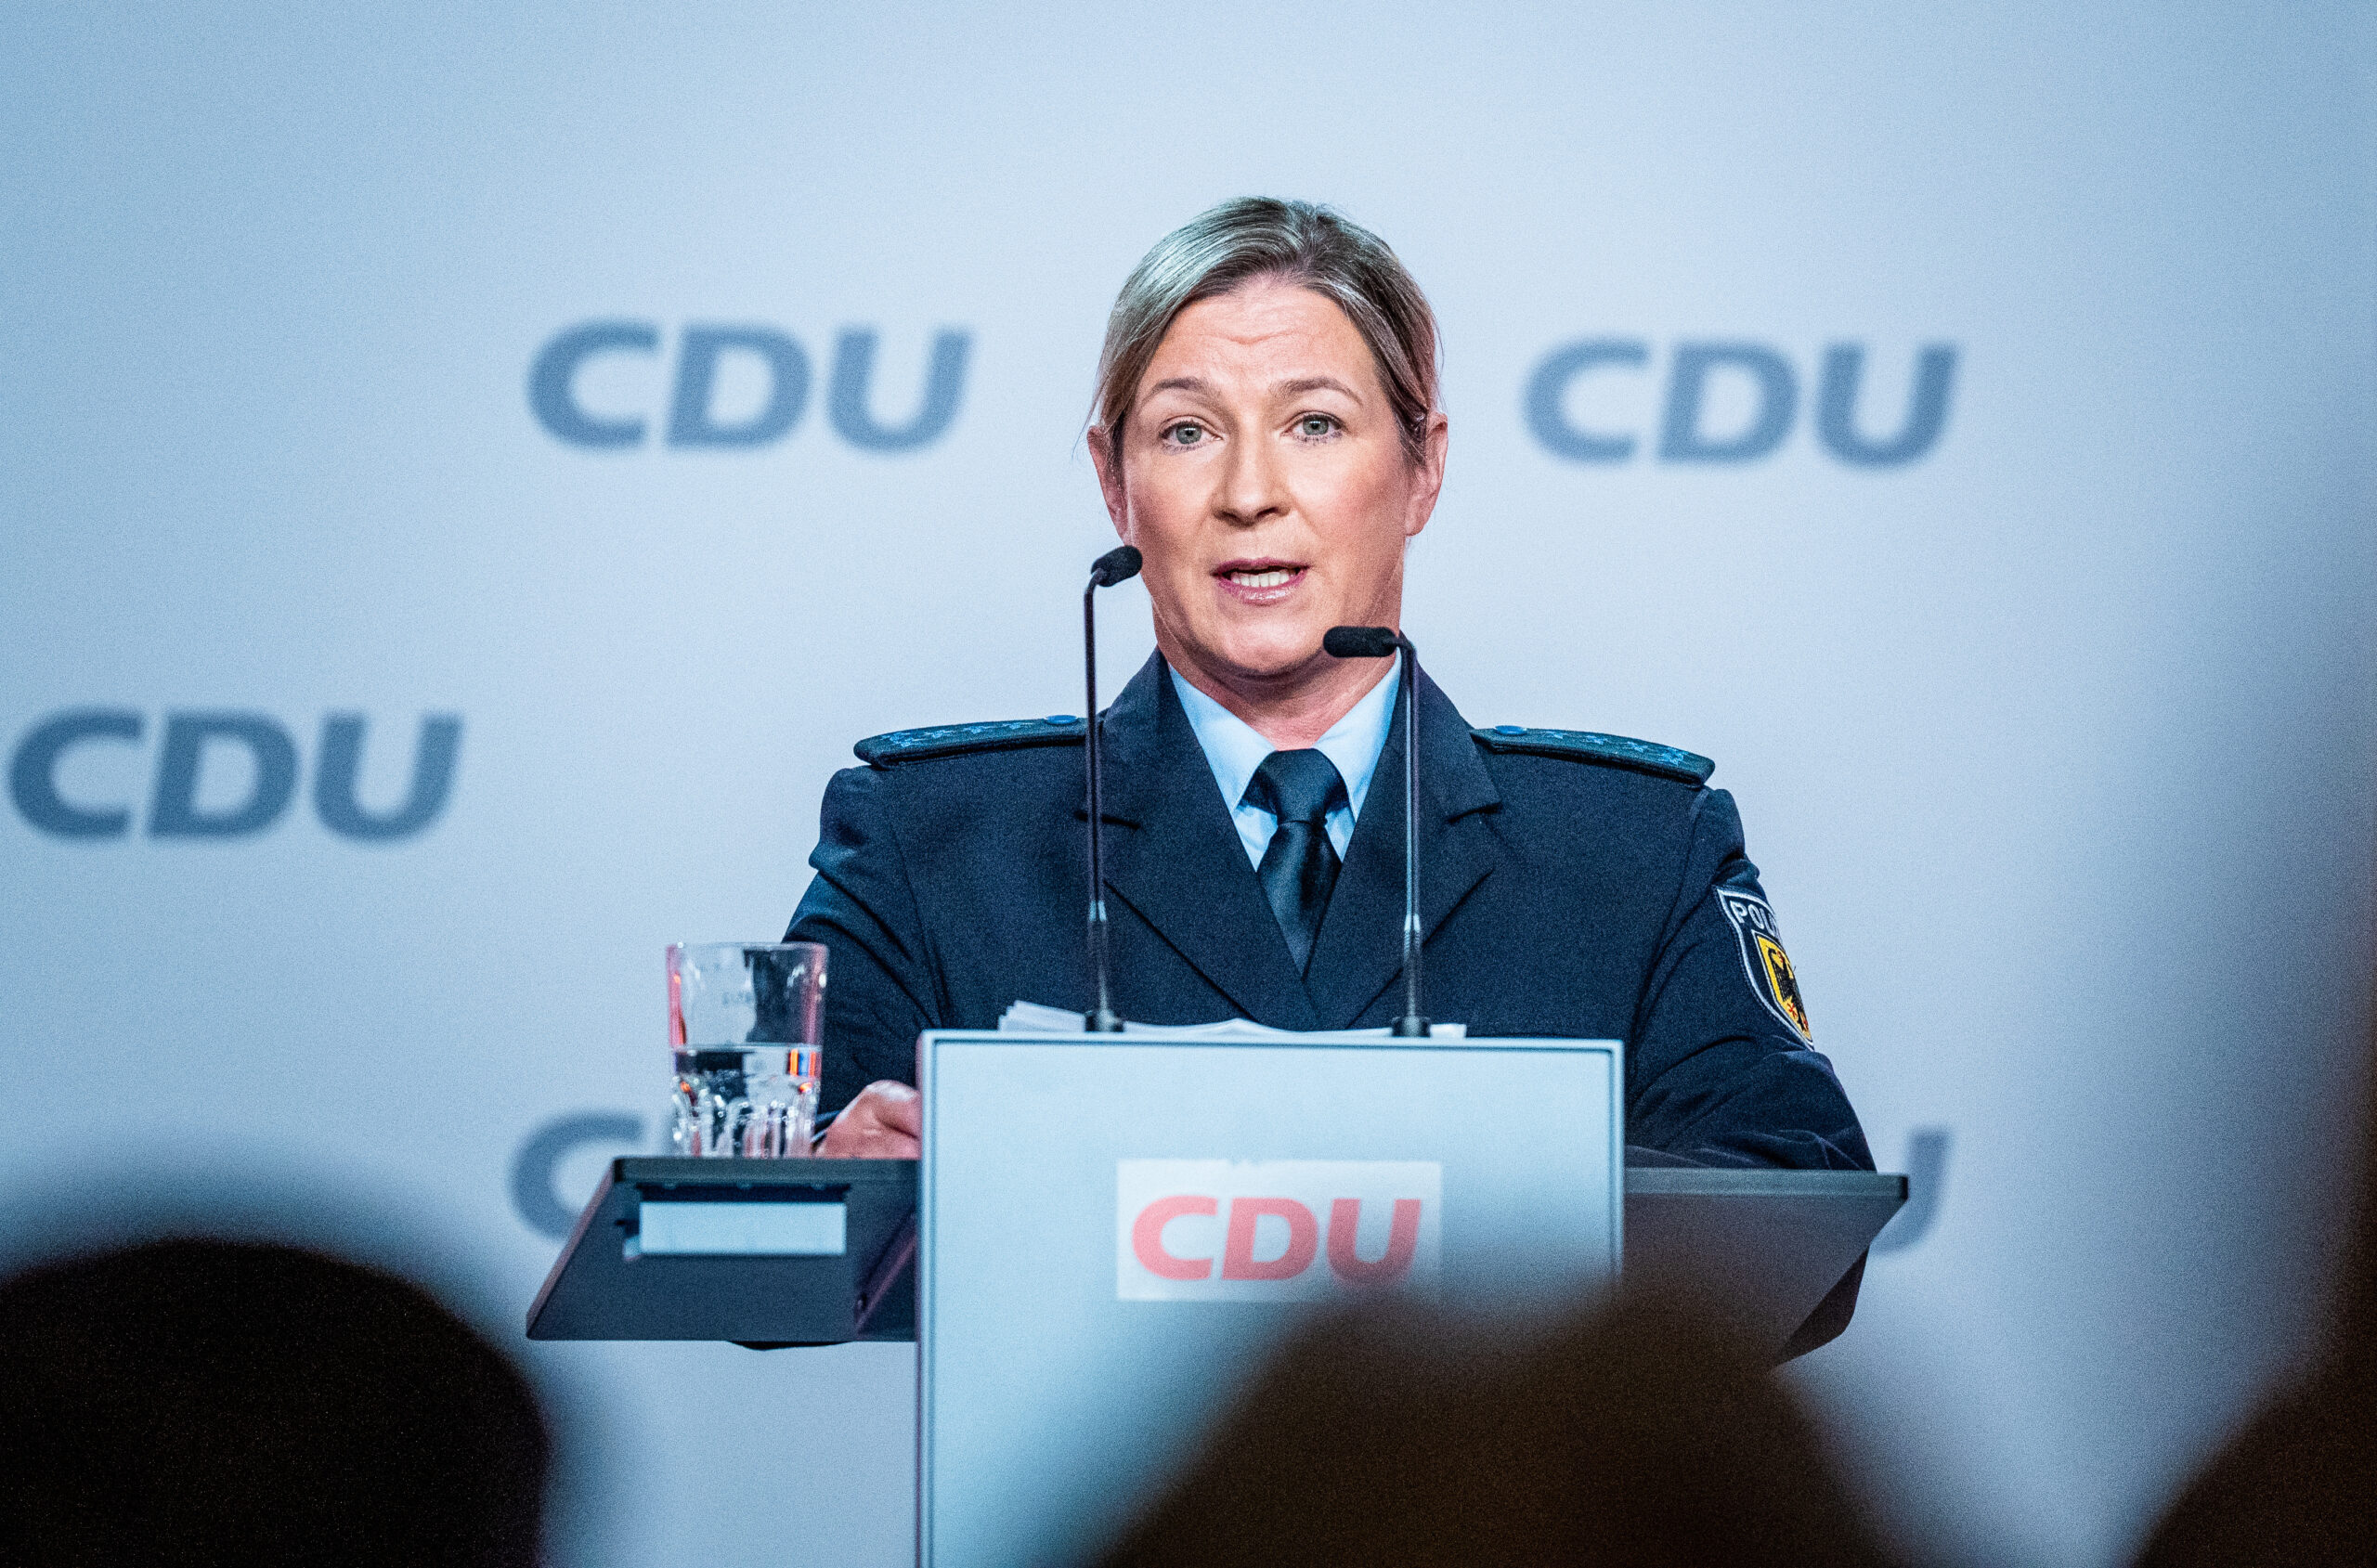 Claudia Pechstein, Olympiasiegerin im Eissschnelllauf, spricht in ihrer Uniform als Bundespolizistin beim CDU-Grundsatzkonvent